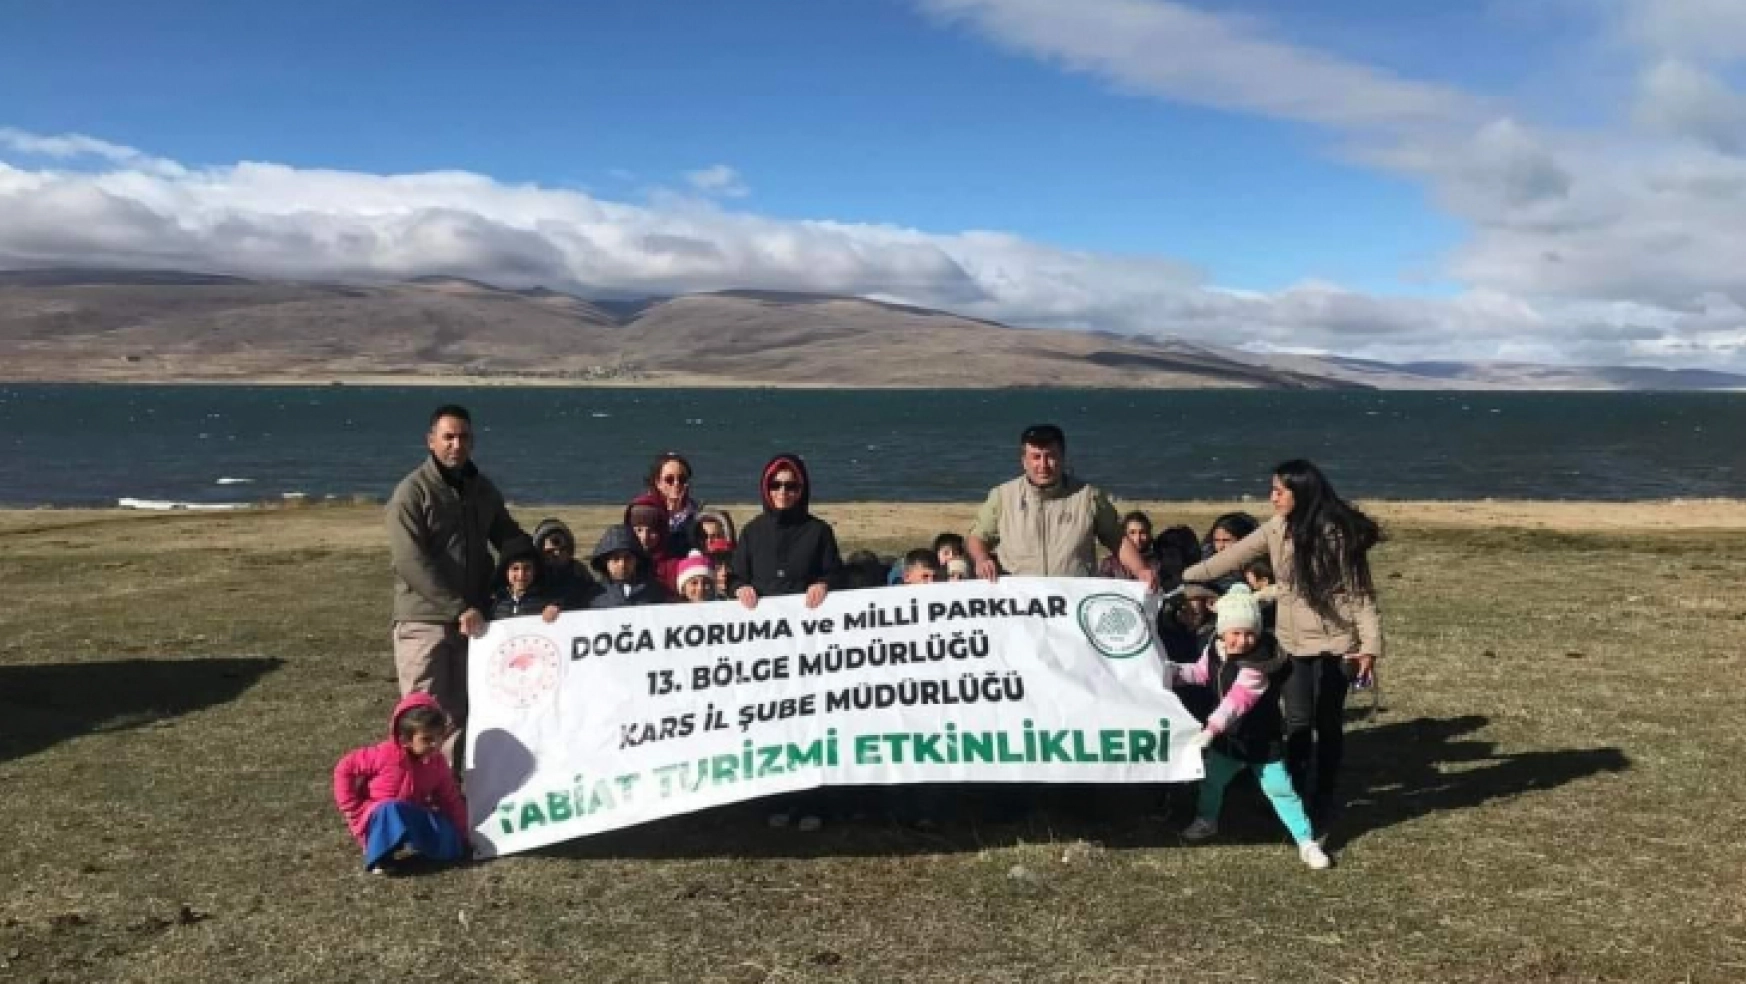 Kars'ta öğrenciler doğa gözlemi yaptı